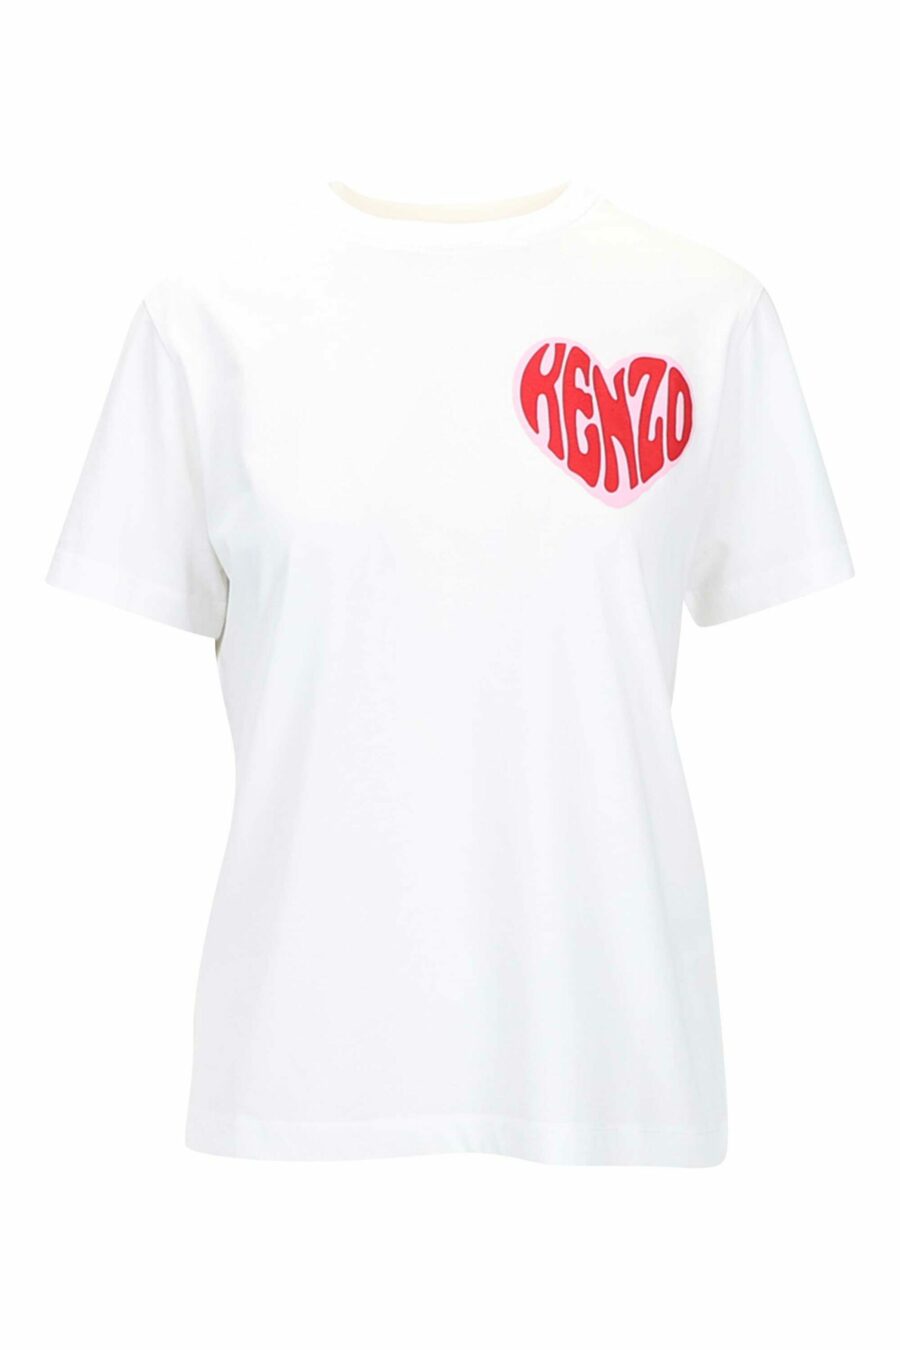 Camiseta blanca con minilogo corazón - 3612230517578 scaled